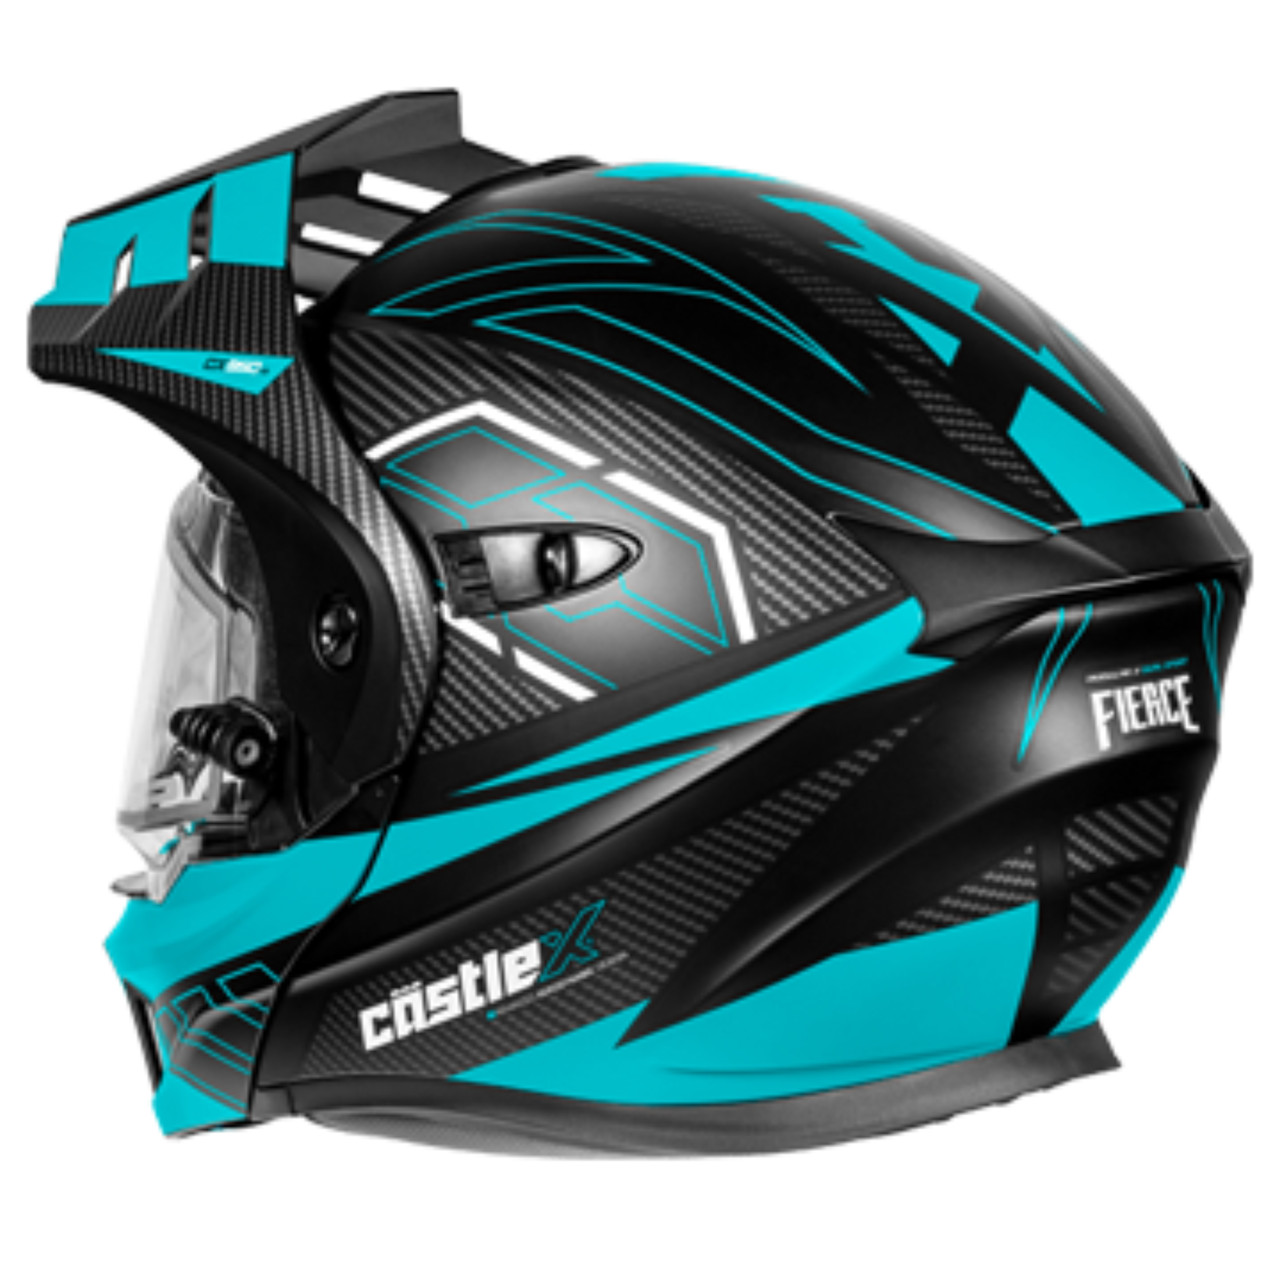 Castle X New Large Matte Black/Turquoise Electric CX950V2 Fierce Helmet 45-22226